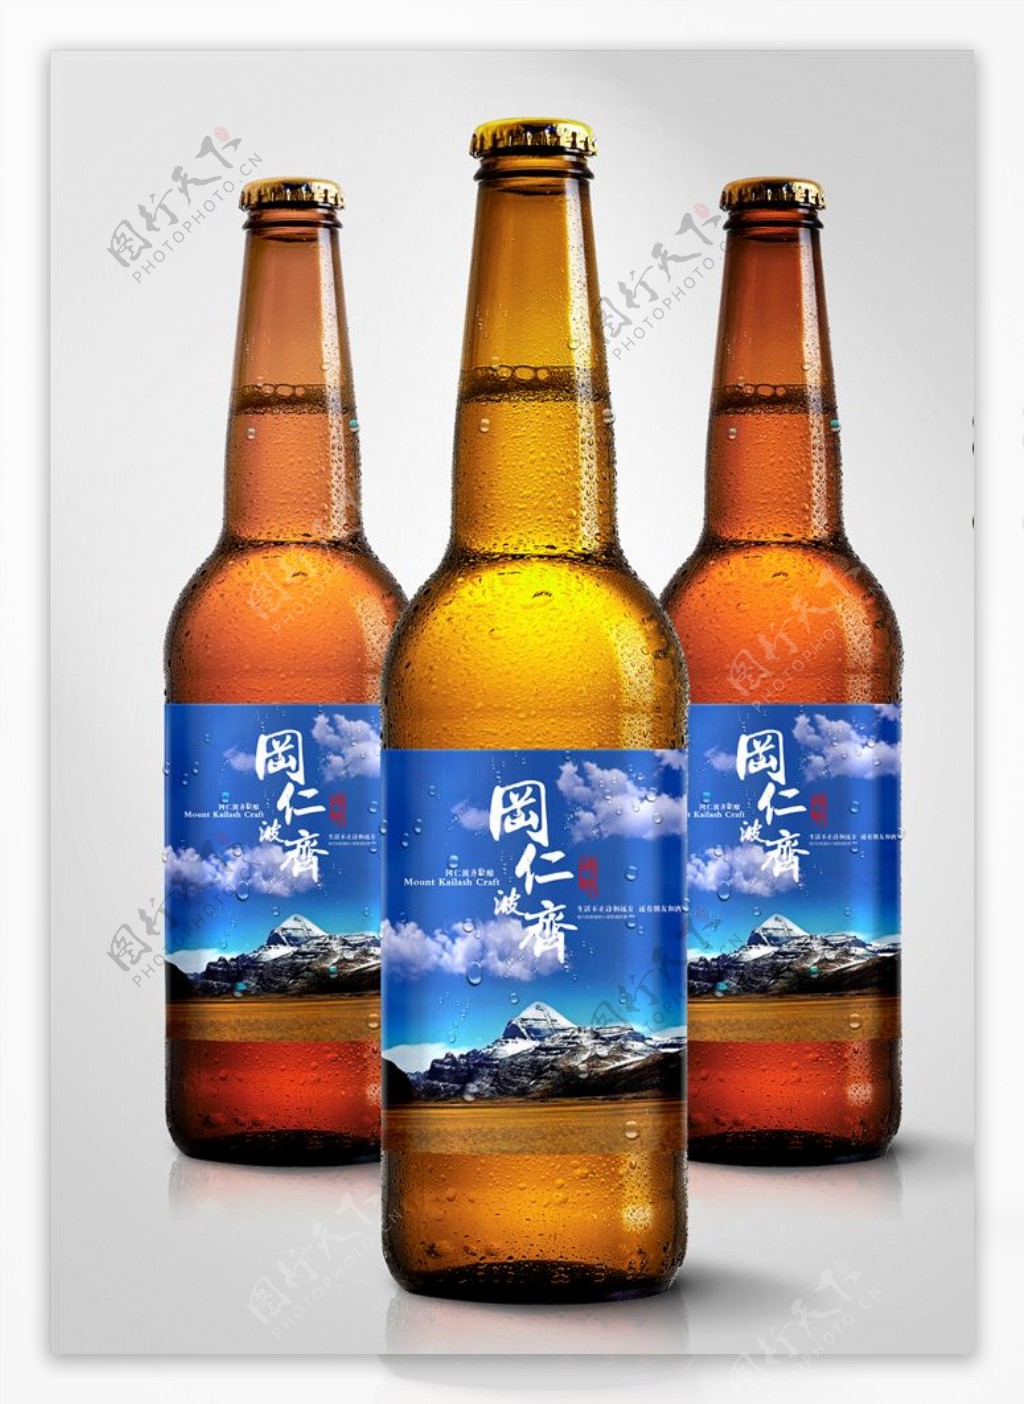 冈仁波齐纯蓝啤酒瓶贴标签